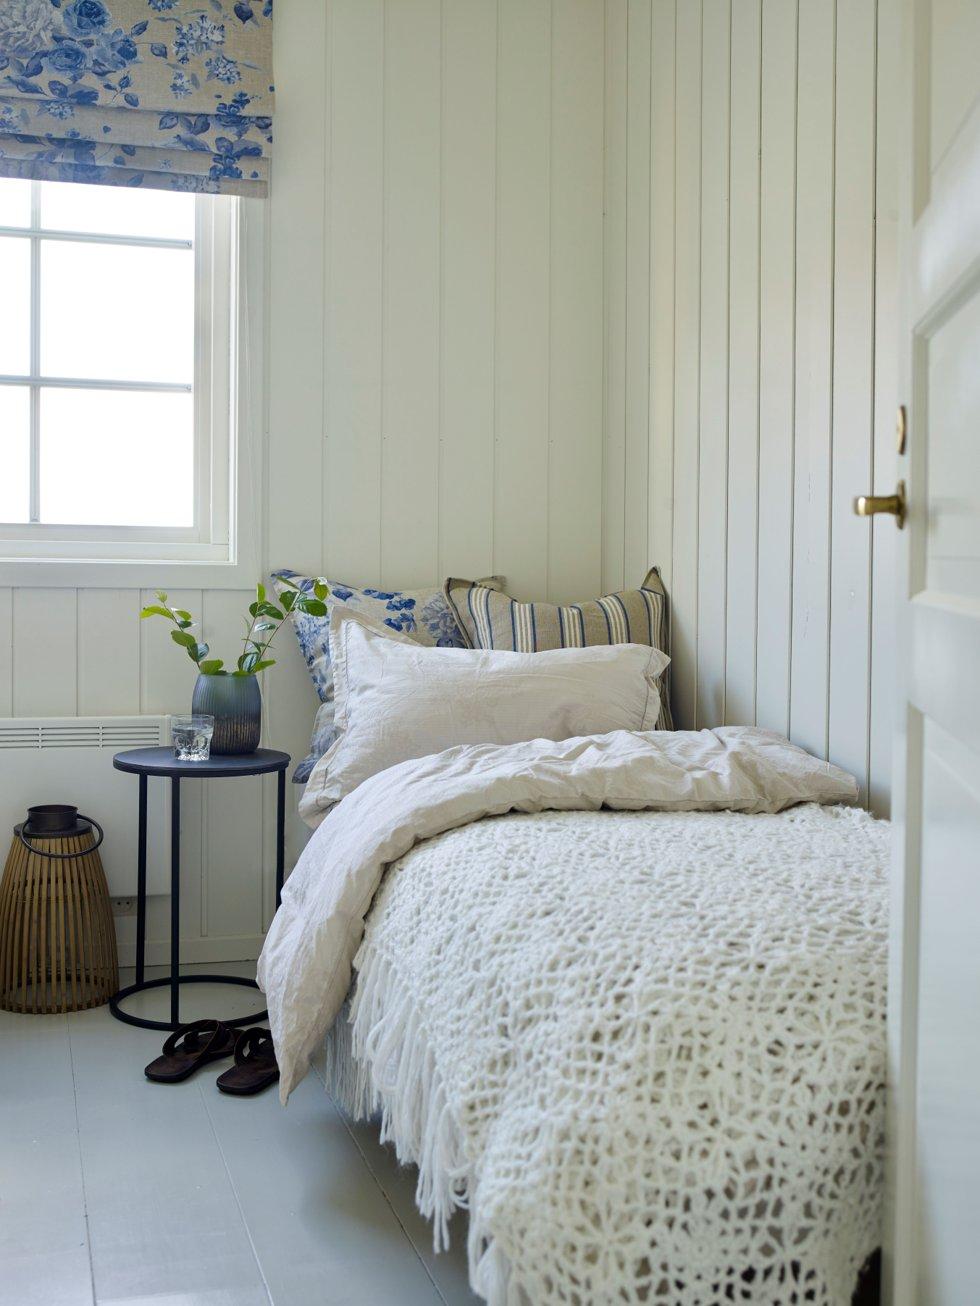 Fresco e buono: la ricerca suggerisce che dormiamo meglio in stanze con colori fantastici.  È qualcosa che ti piace?  Foto: colorato